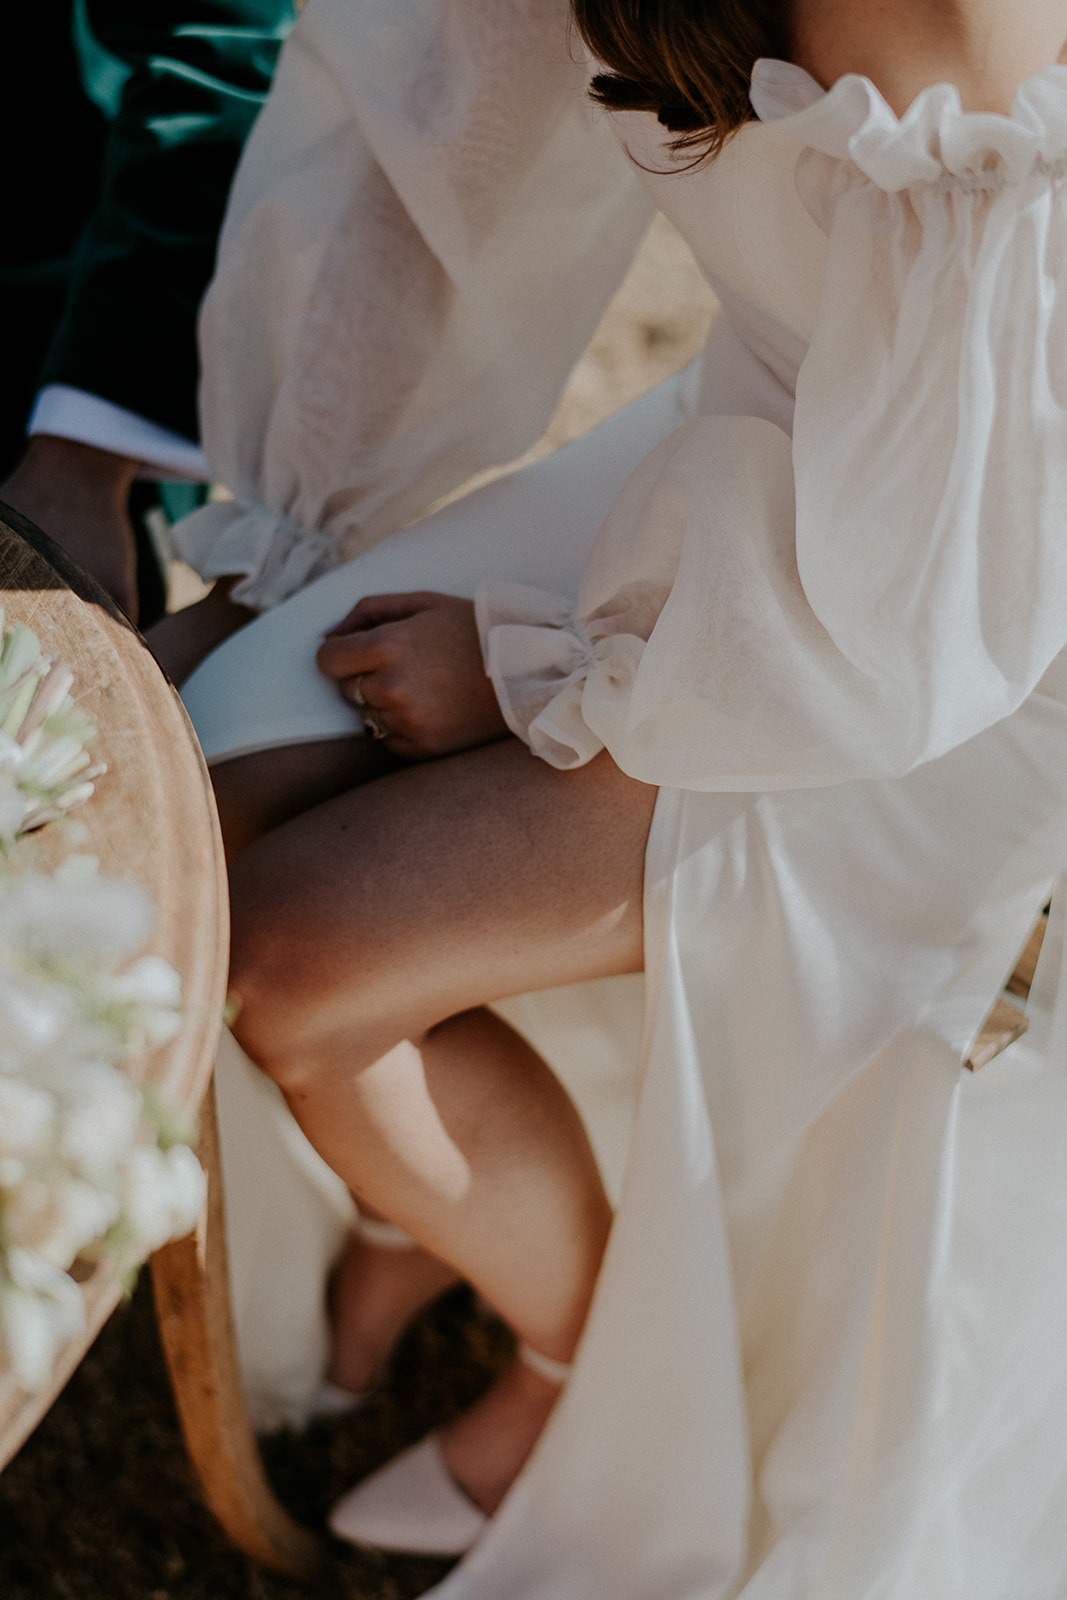 Redleaf wedding brides sleeve dress and shoe while sitting